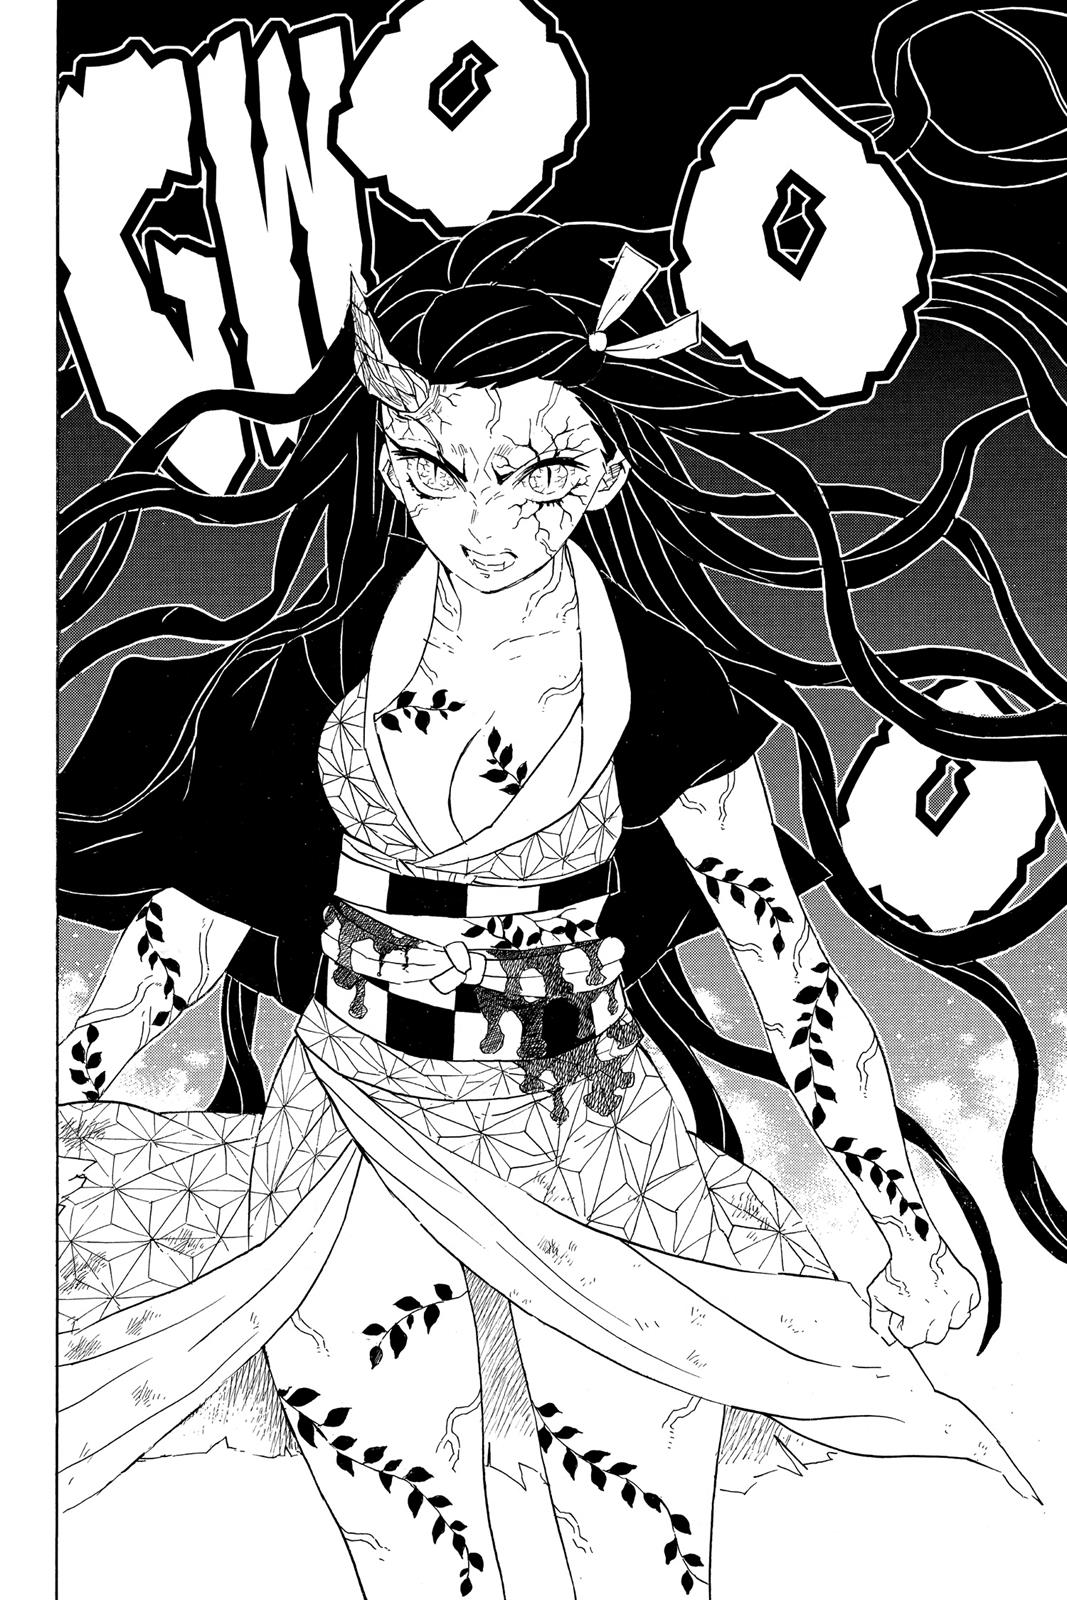 Demon Slayer Manga Manga Chapter - 83 - image 7